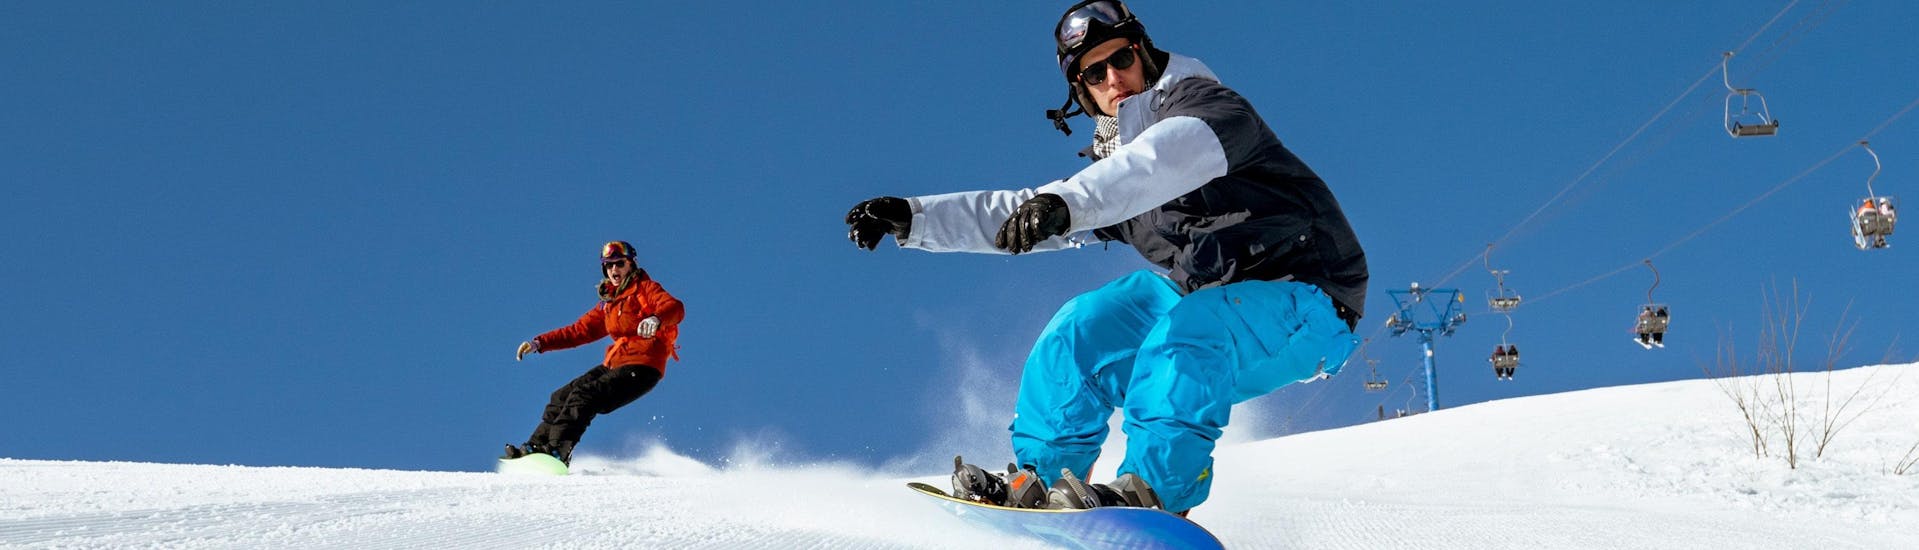 Zwei Snowboarder brettern bei ihrem Snowboardkurs eine frisch präparierte Piste hinunter.